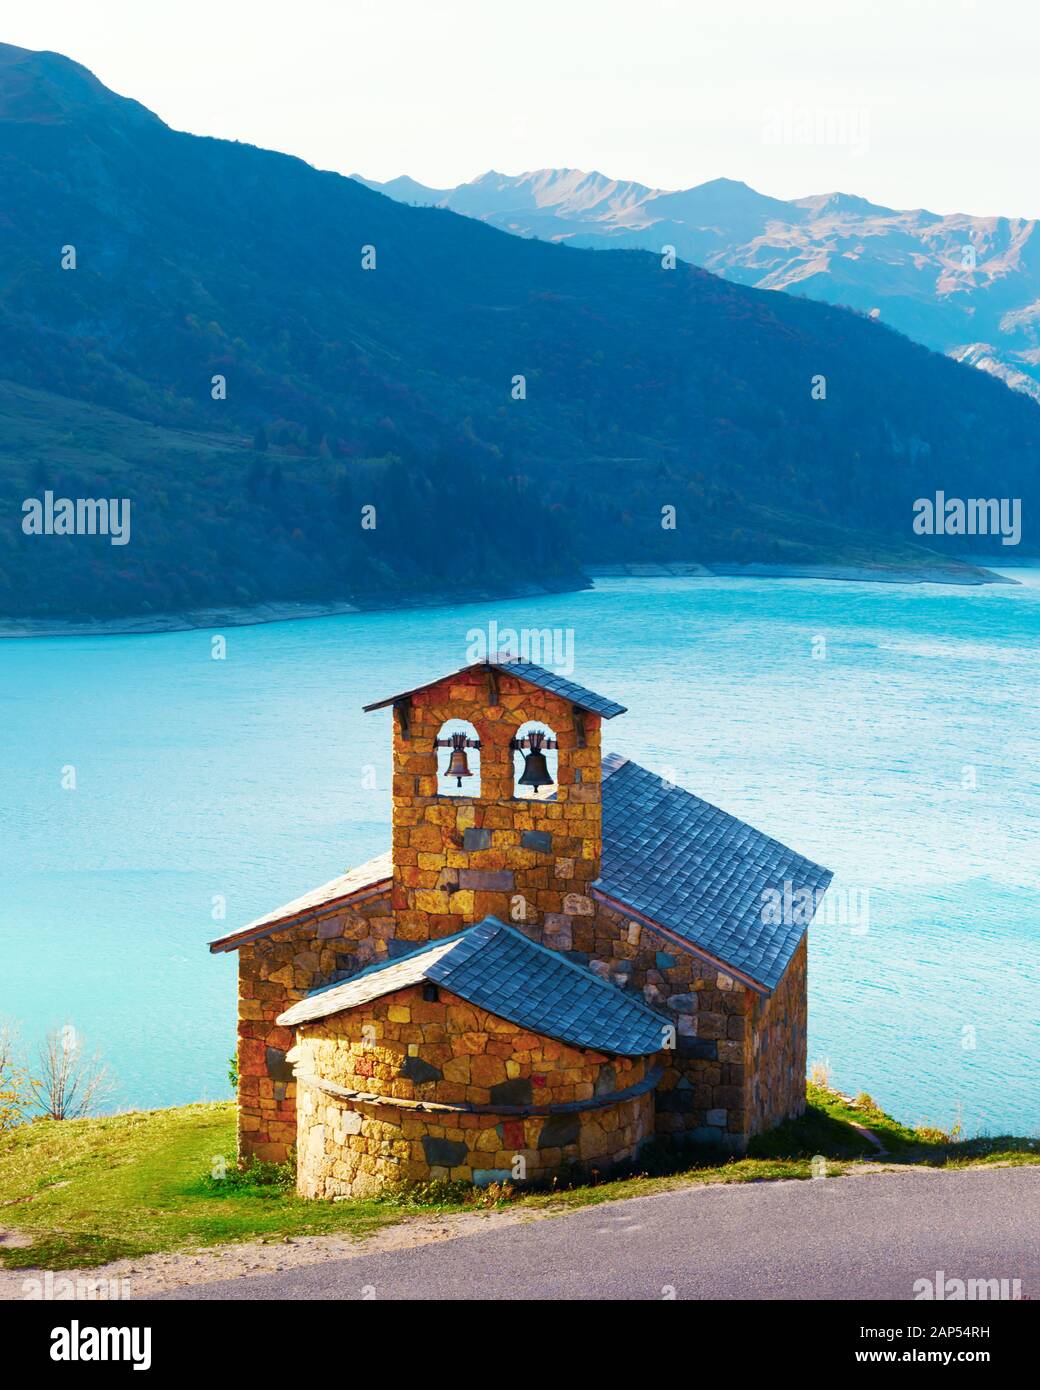 Vista pittoresca della cappella di pietra sul lago di Roselend costa (Lac de Roselend) in Francia Alpi (Auvergne-Rhone-Alpes). Fotografia di paesaggi Foto Stock